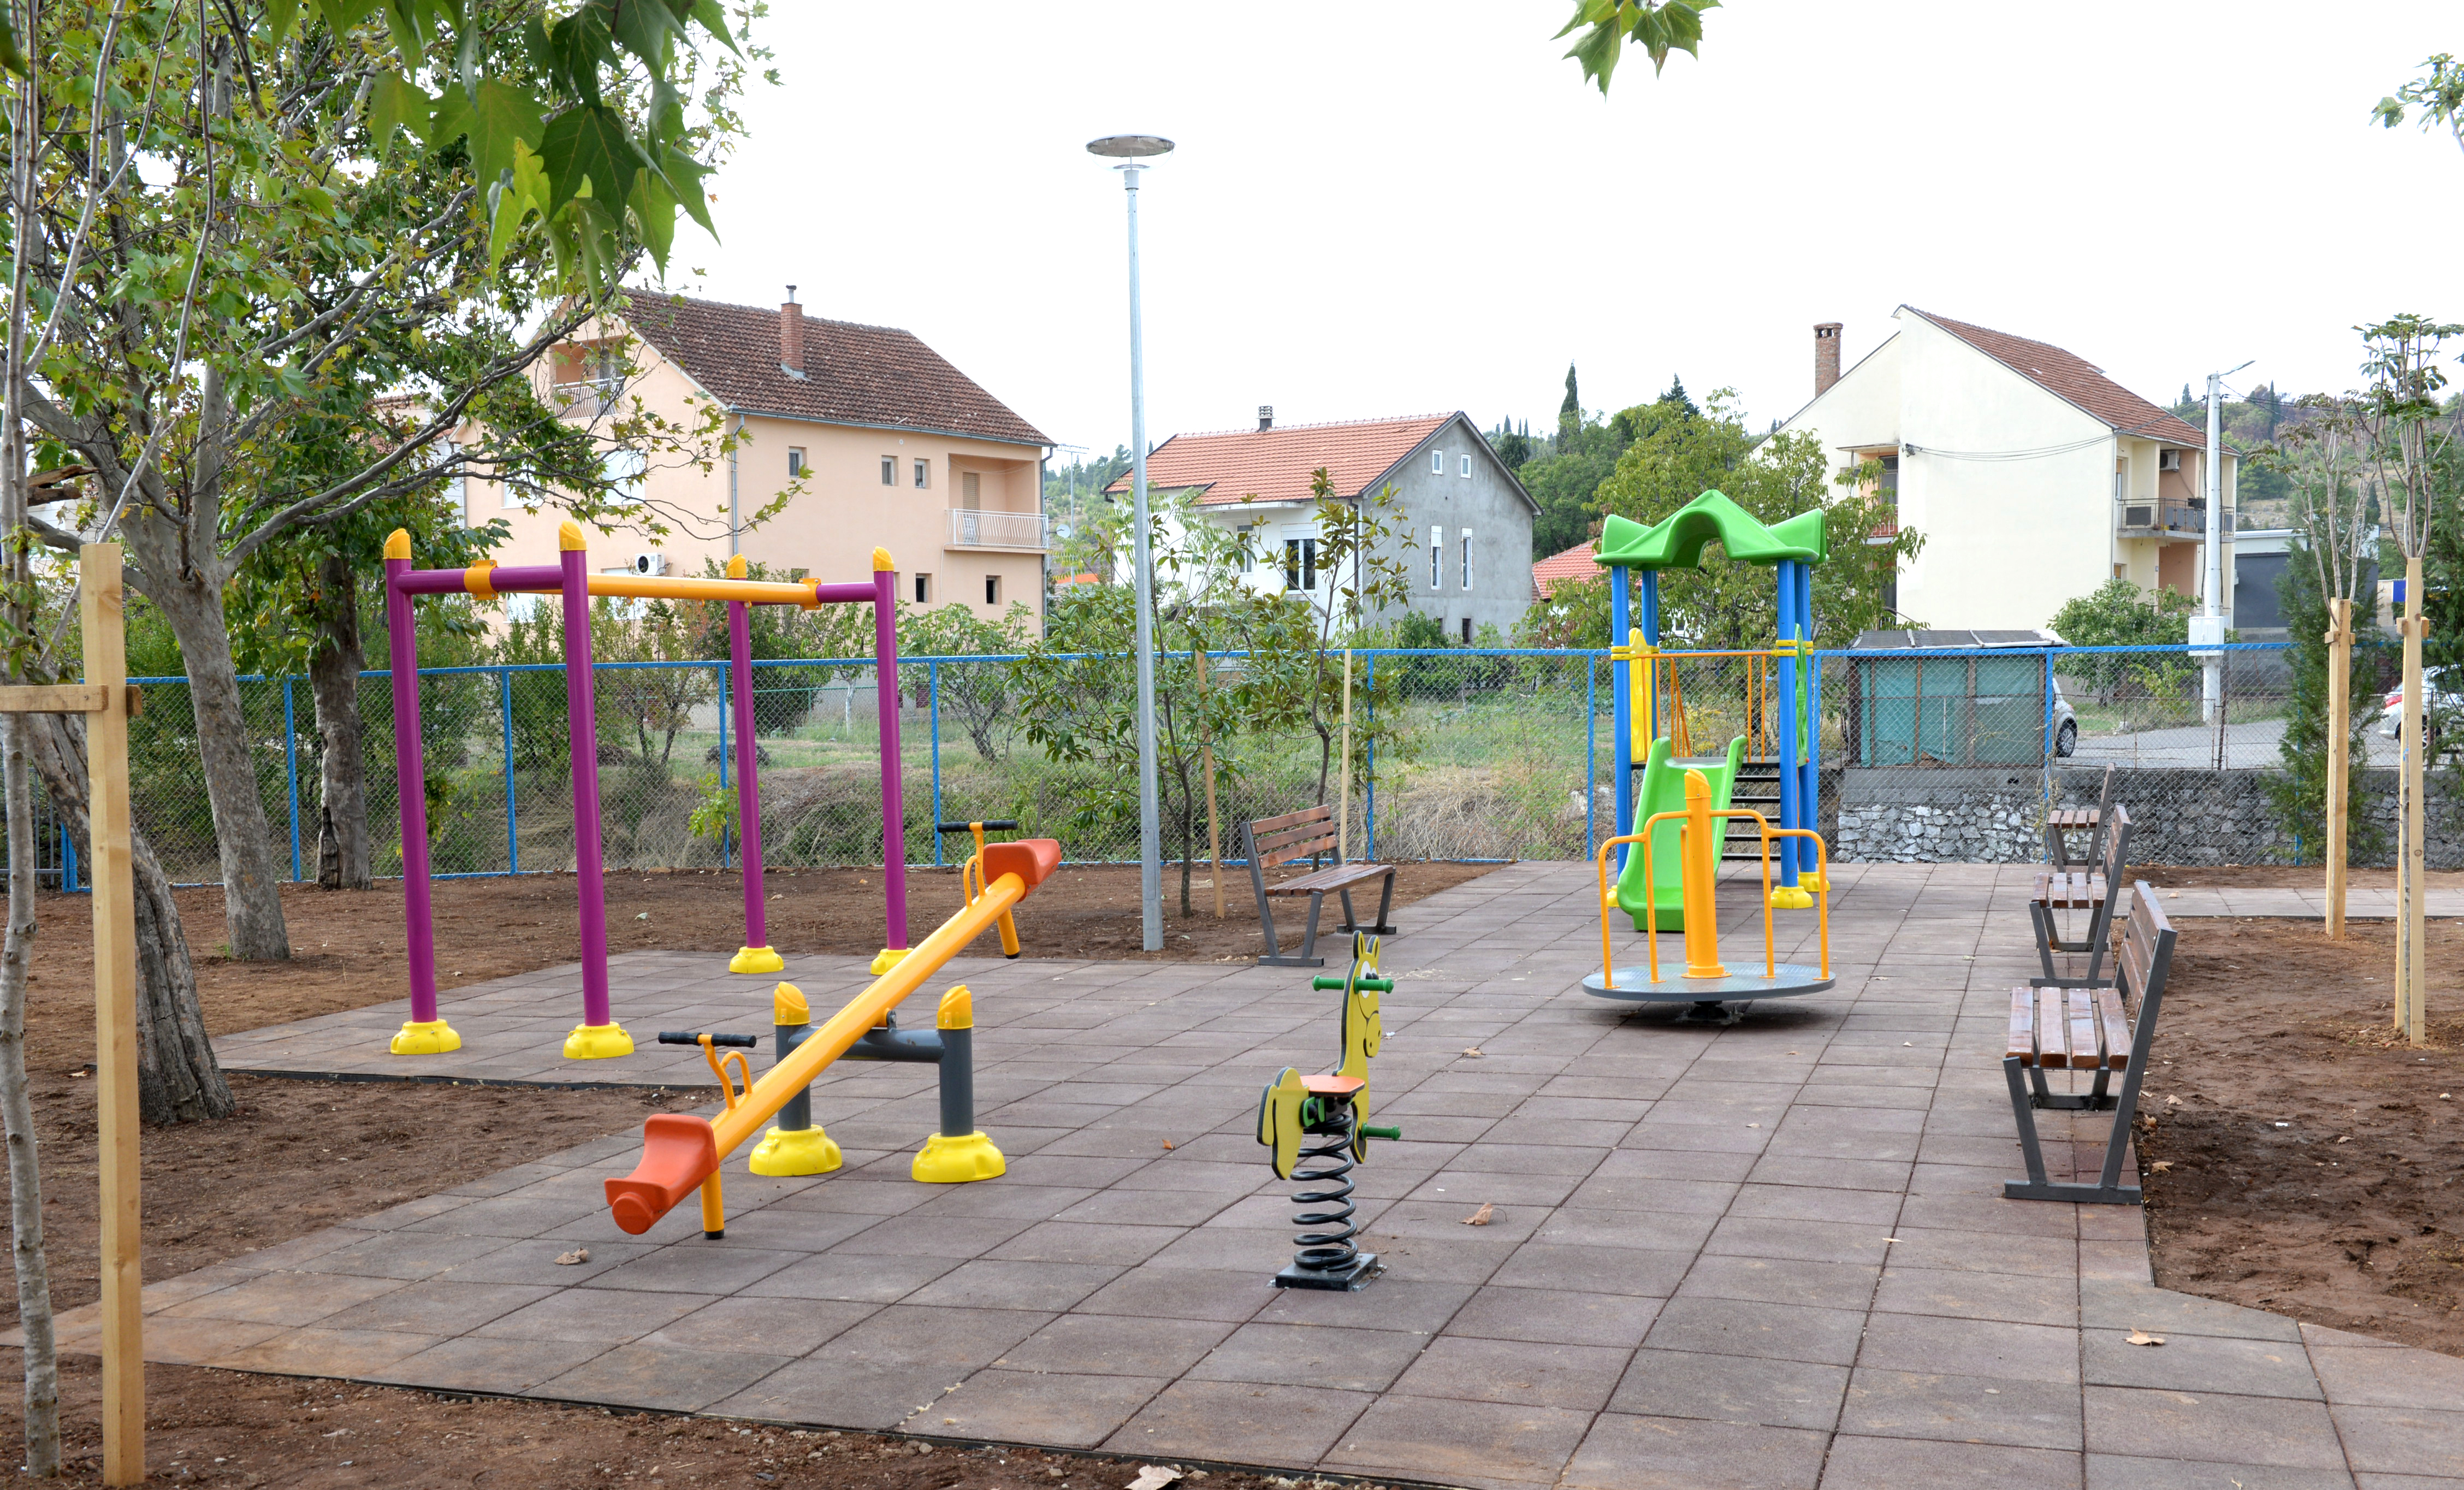 Završeno uređenje objekta MZ "Masline" i temeljna rekonstrukcija dječijeg igrališta